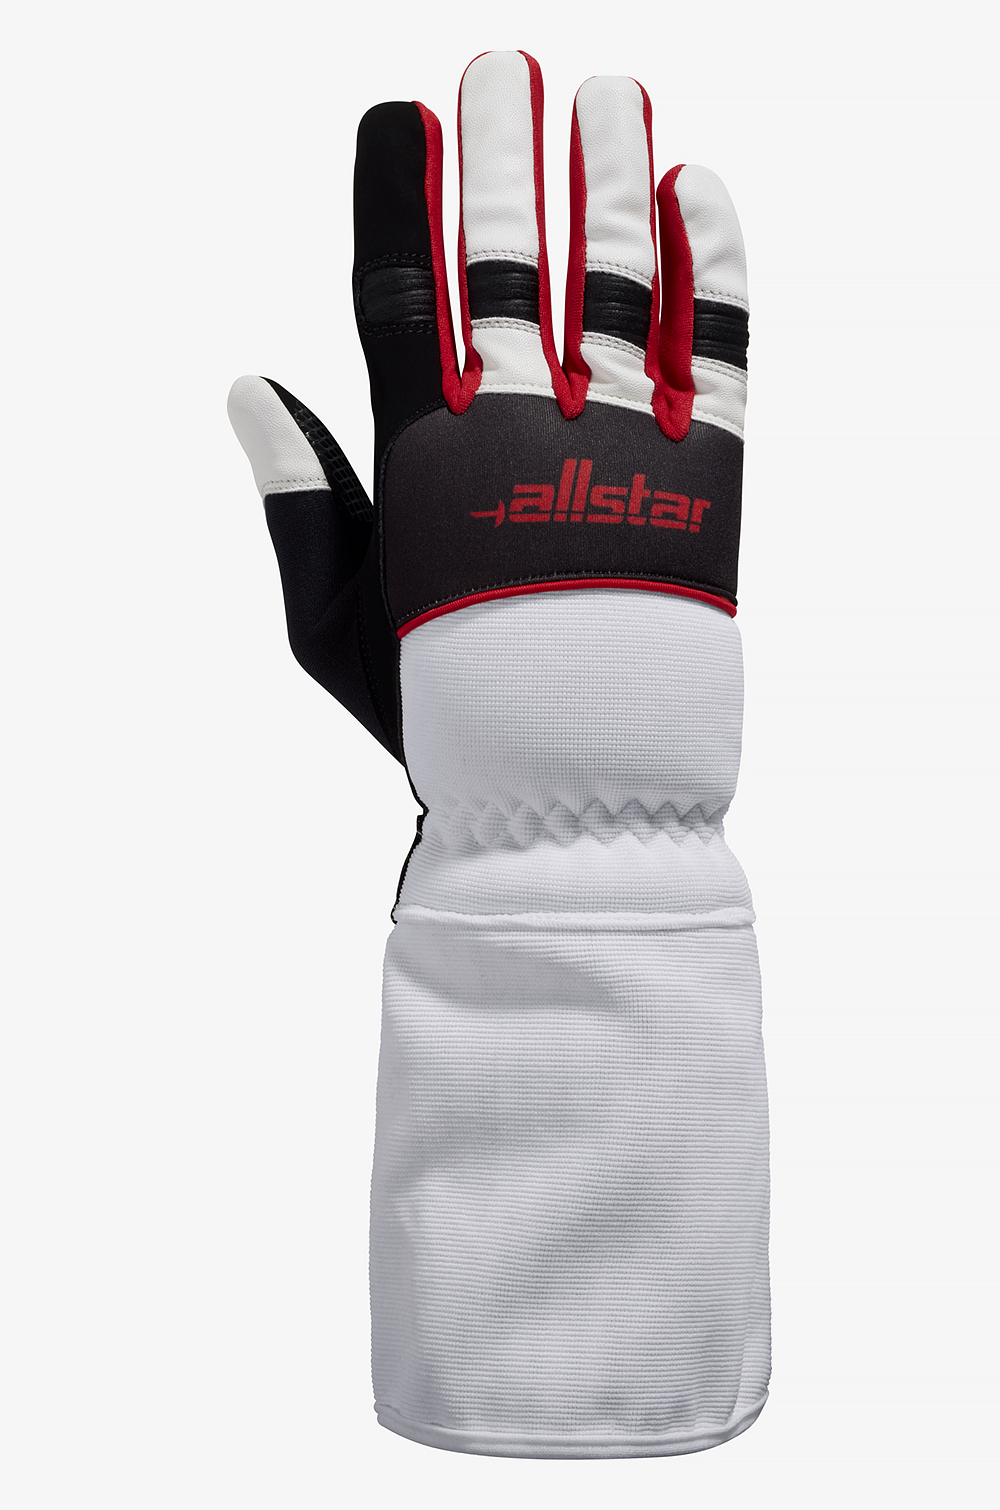 Hyper-X Glove